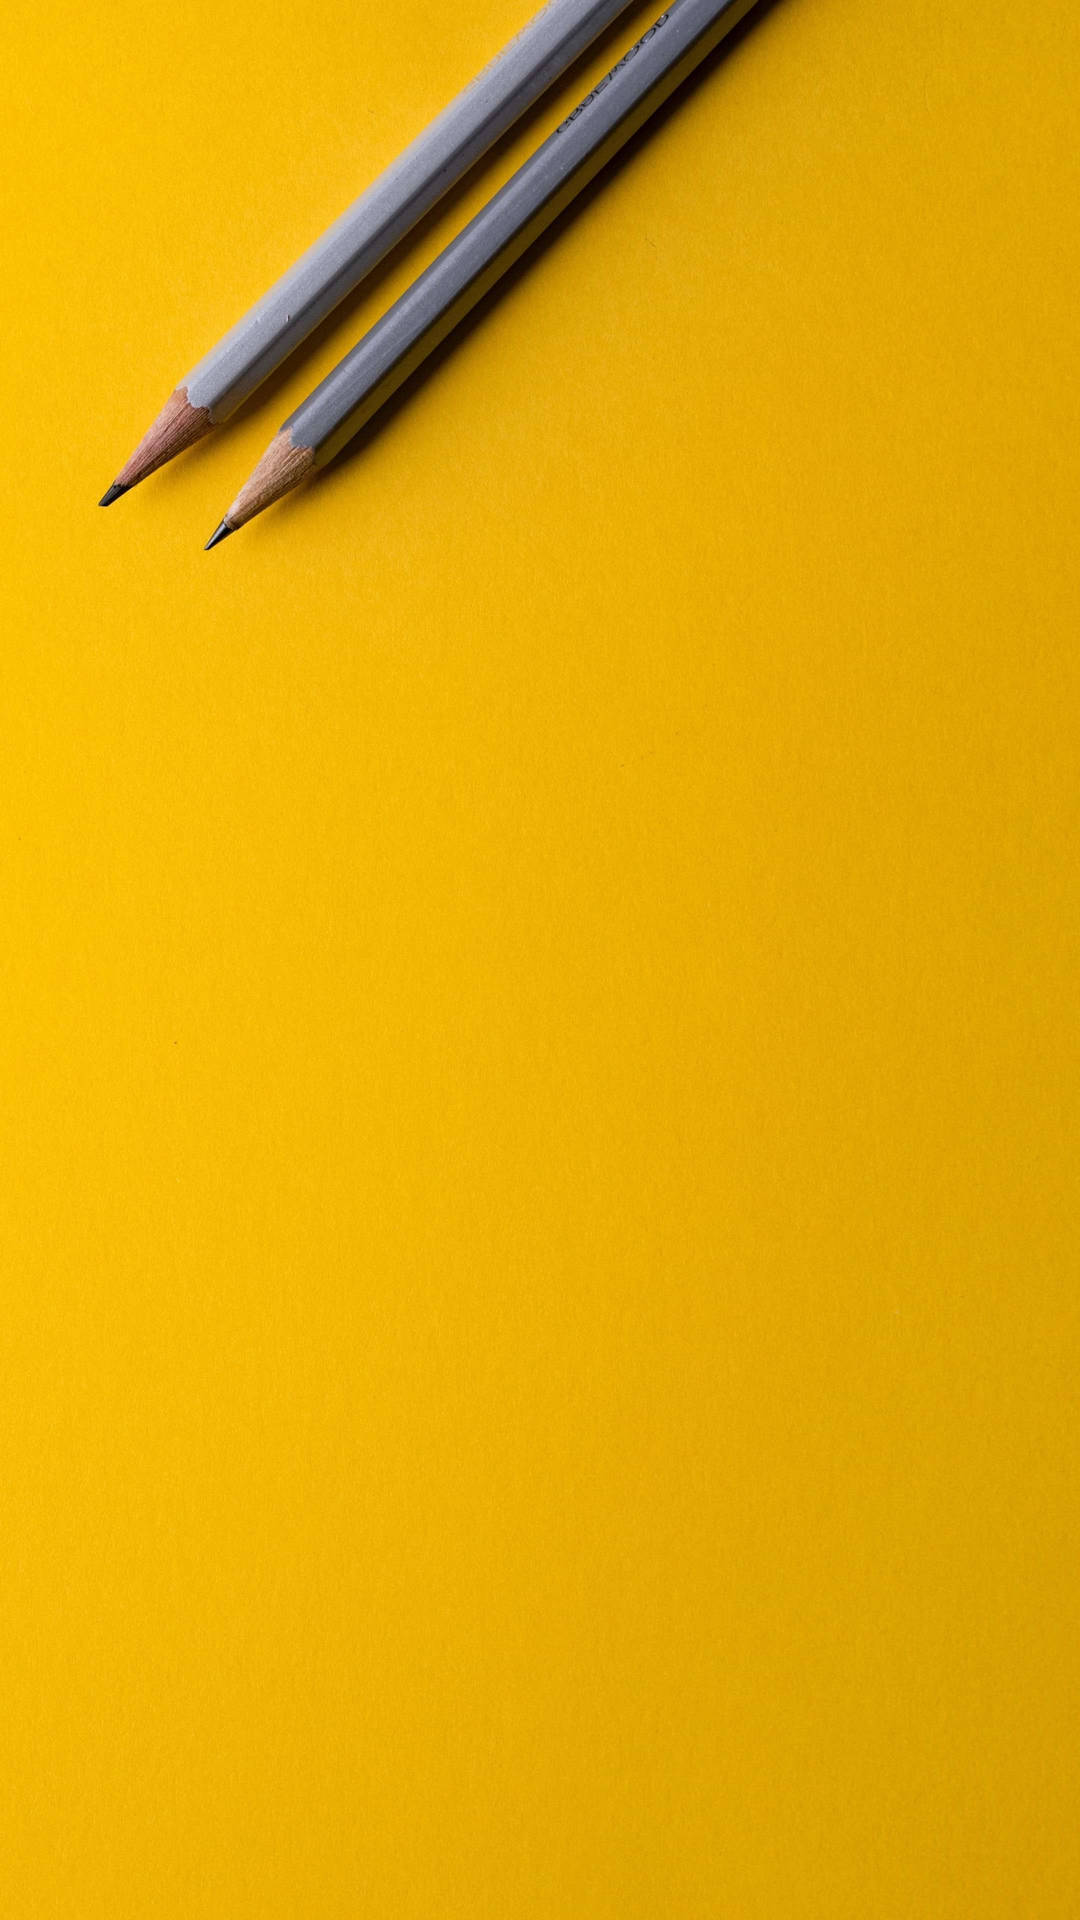 Pencils Minimalist Phone